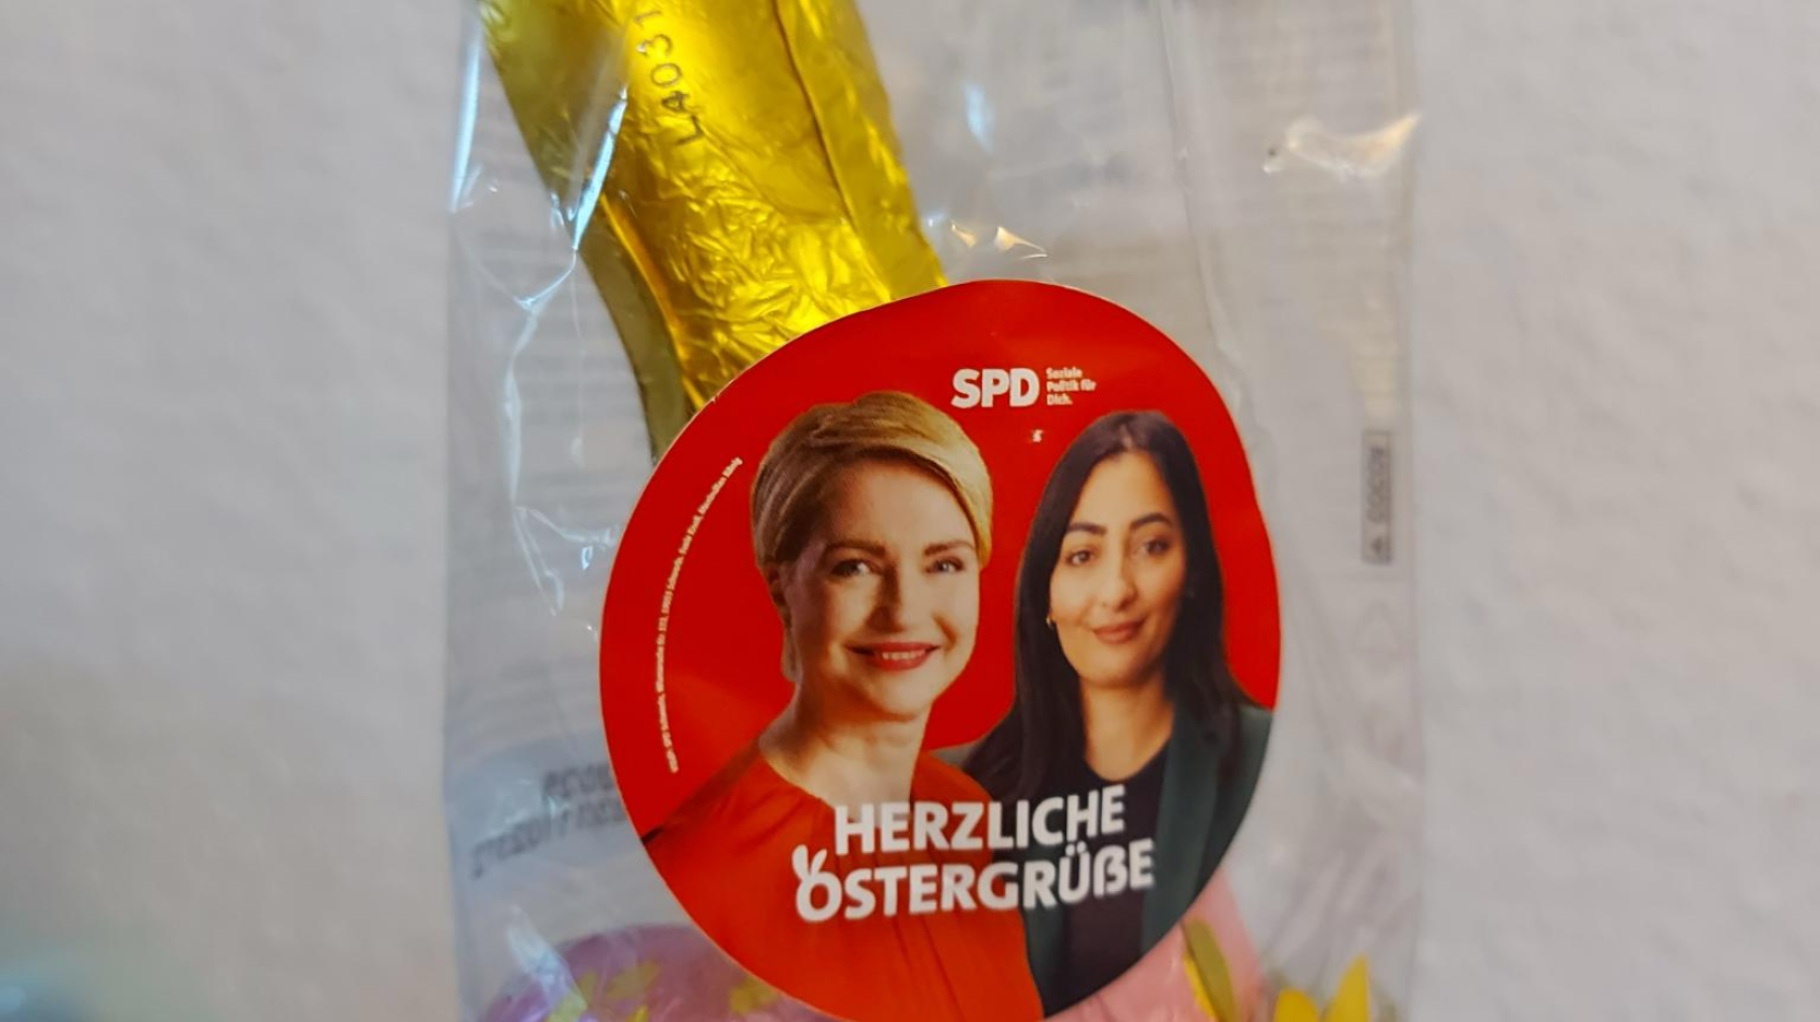 Für SPD-Ostergrüße mit Schwesig-Foto in Schweriner Kitas hagelt es Kritik 